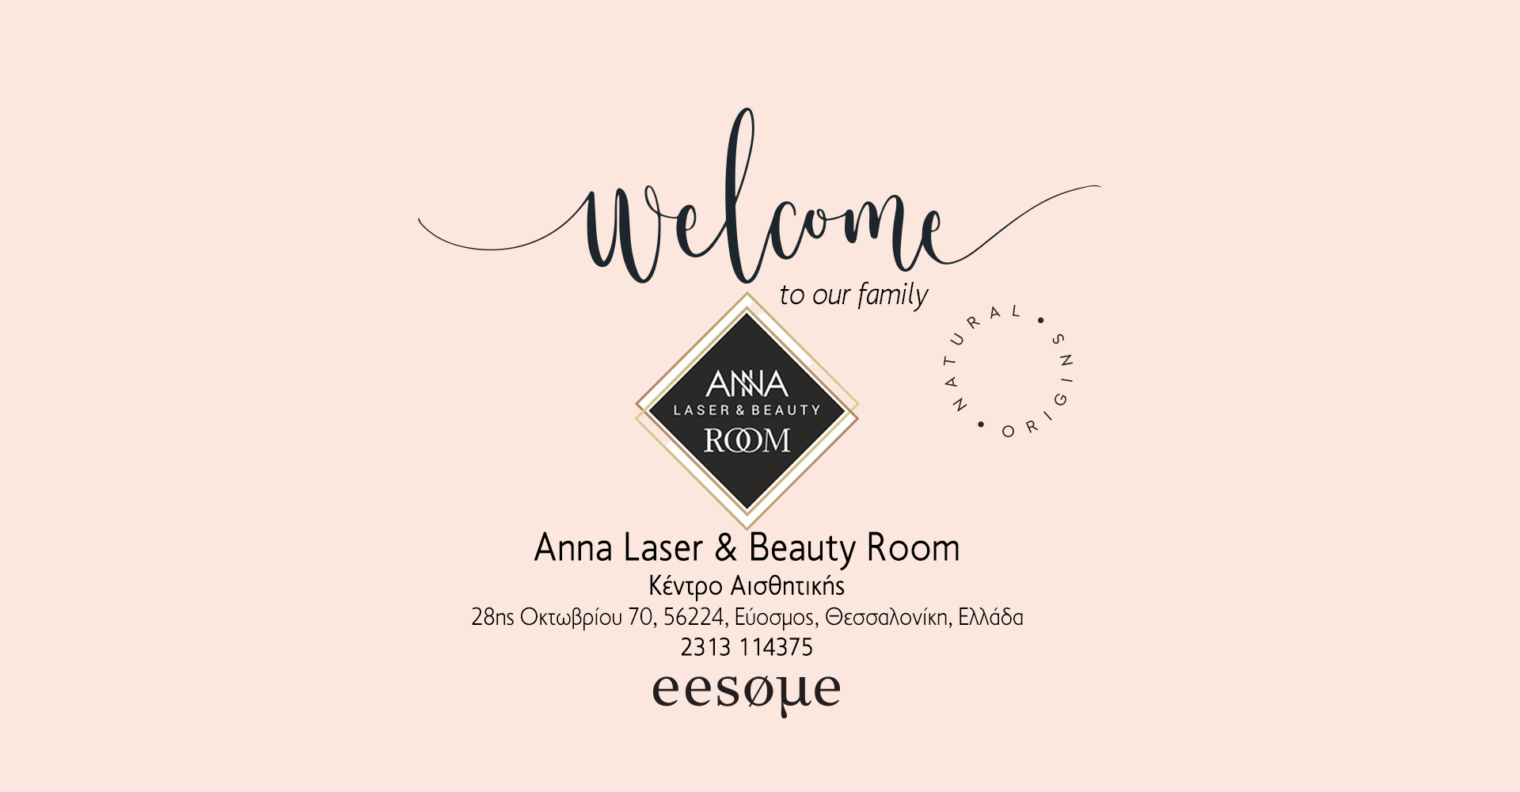 Κέντρο αισθητικής Anna Laser & Beauty Room